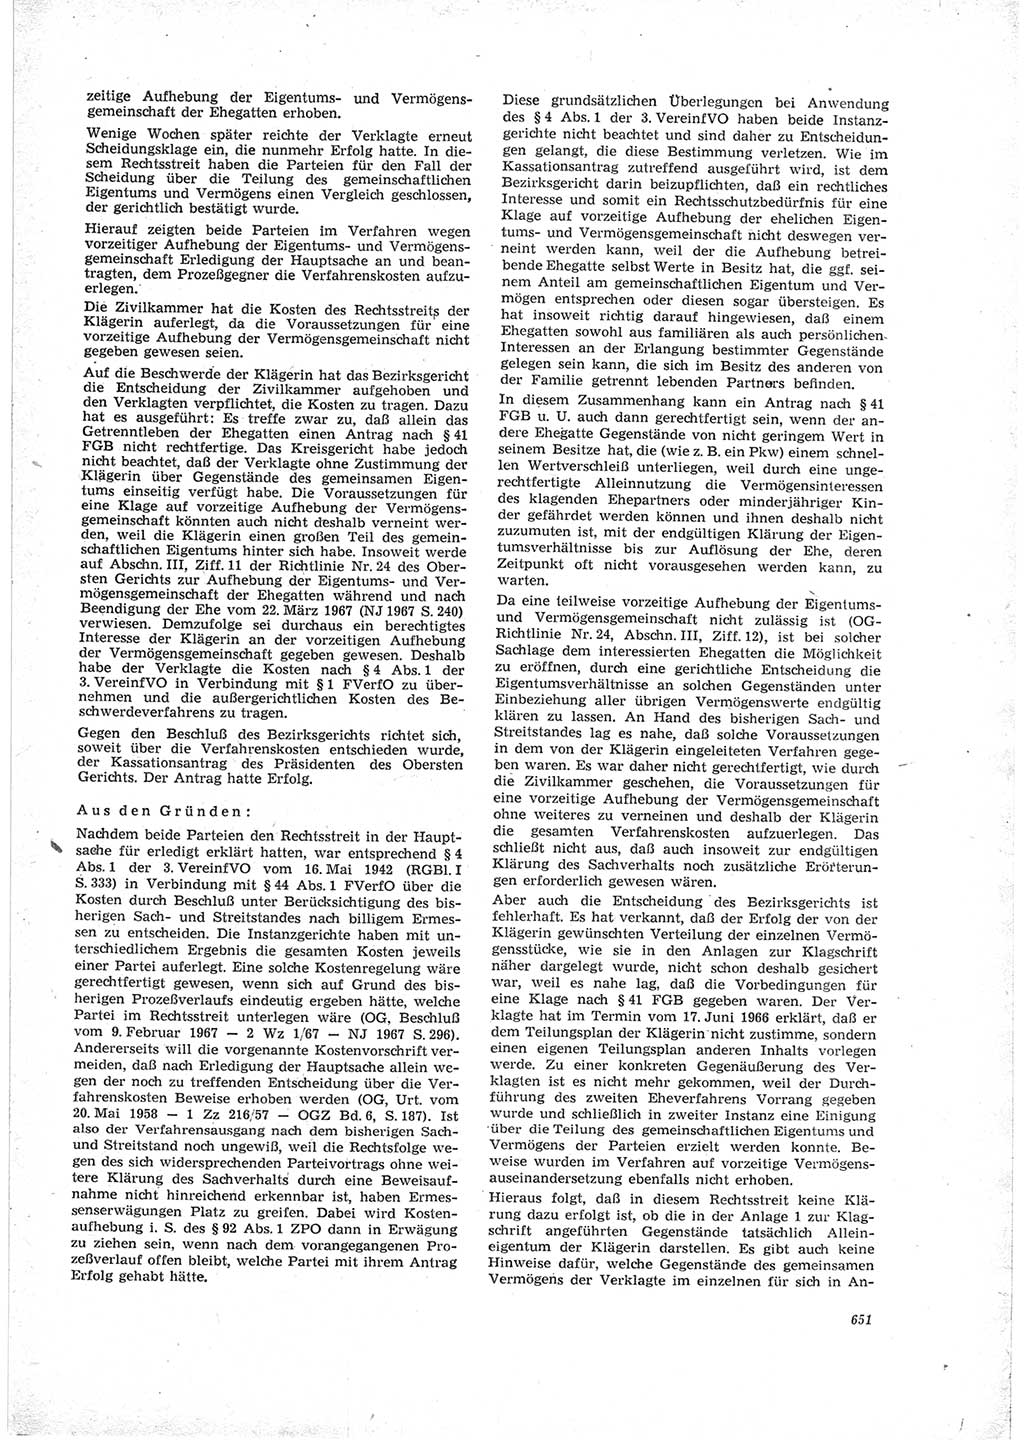 Neue Justiz (NJ), Zeitschrift für Recht und Rechtswissenschaft [Deutsche Demokratische Republik (DDR)], 23. Jahrgang 1969, Seite 651 (NJ DDR 1969, S. 651)